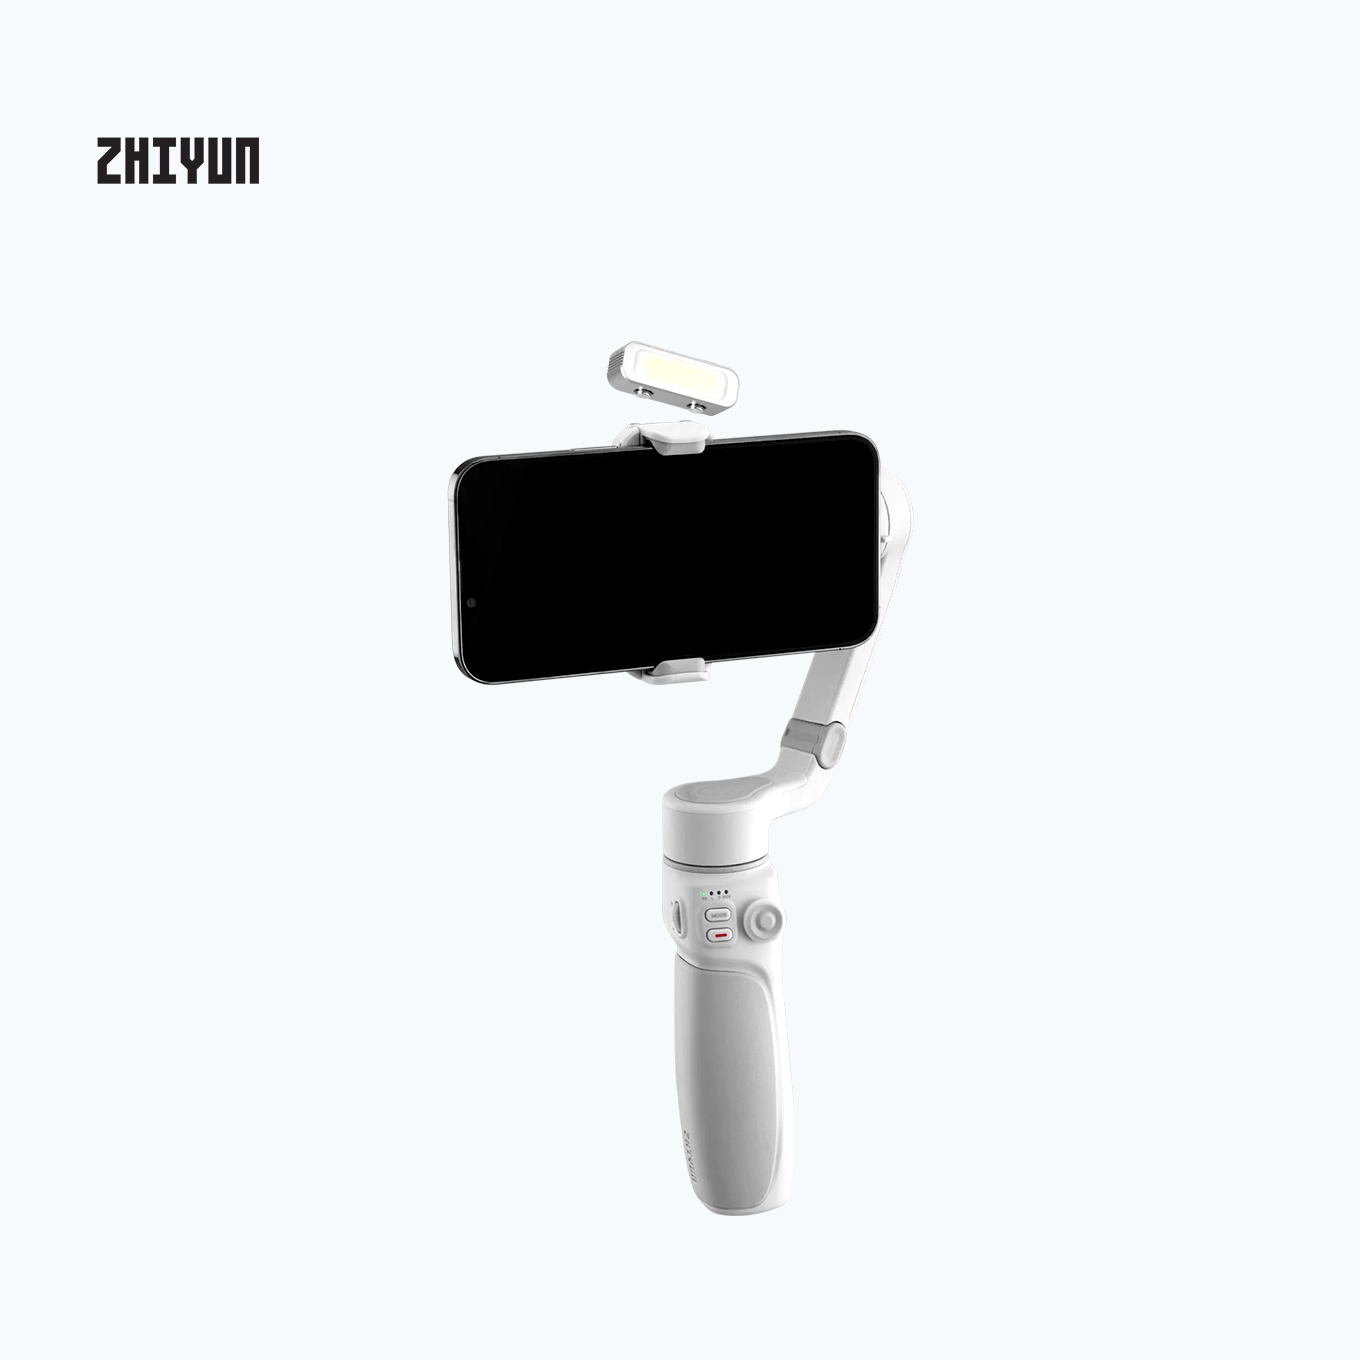 Zhiyun Smooth Q4 Mobile Gimbal